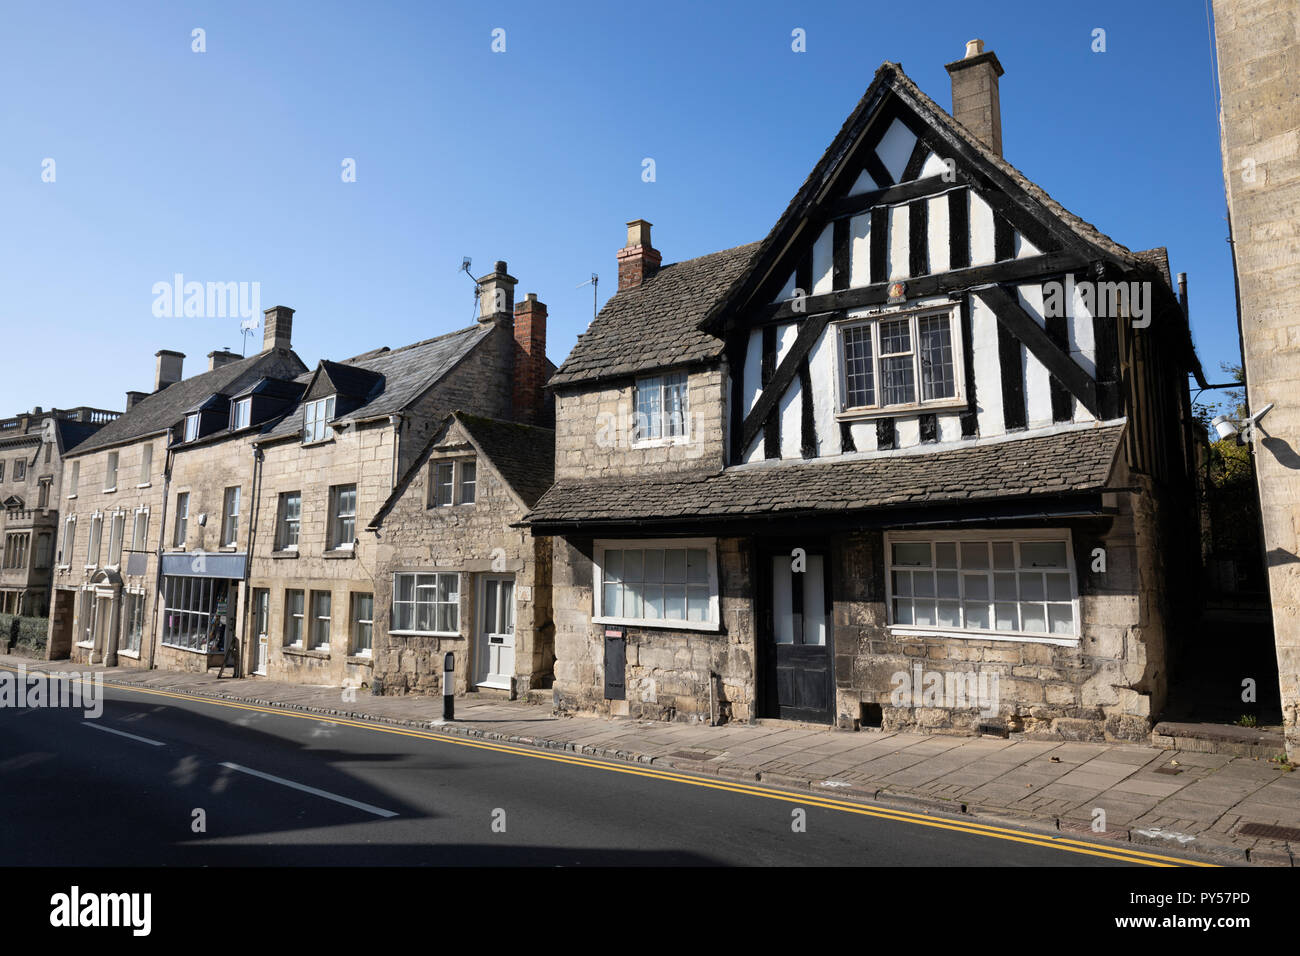 L'ancien bureau de poste et de cottages en pierre de Cotswold, le long de la rue dans la lumière du soleil de l'après-midi, Painswick, Cotswolds, Gloucestershire, Angleterre, Royaume-Uni Banque D'Images